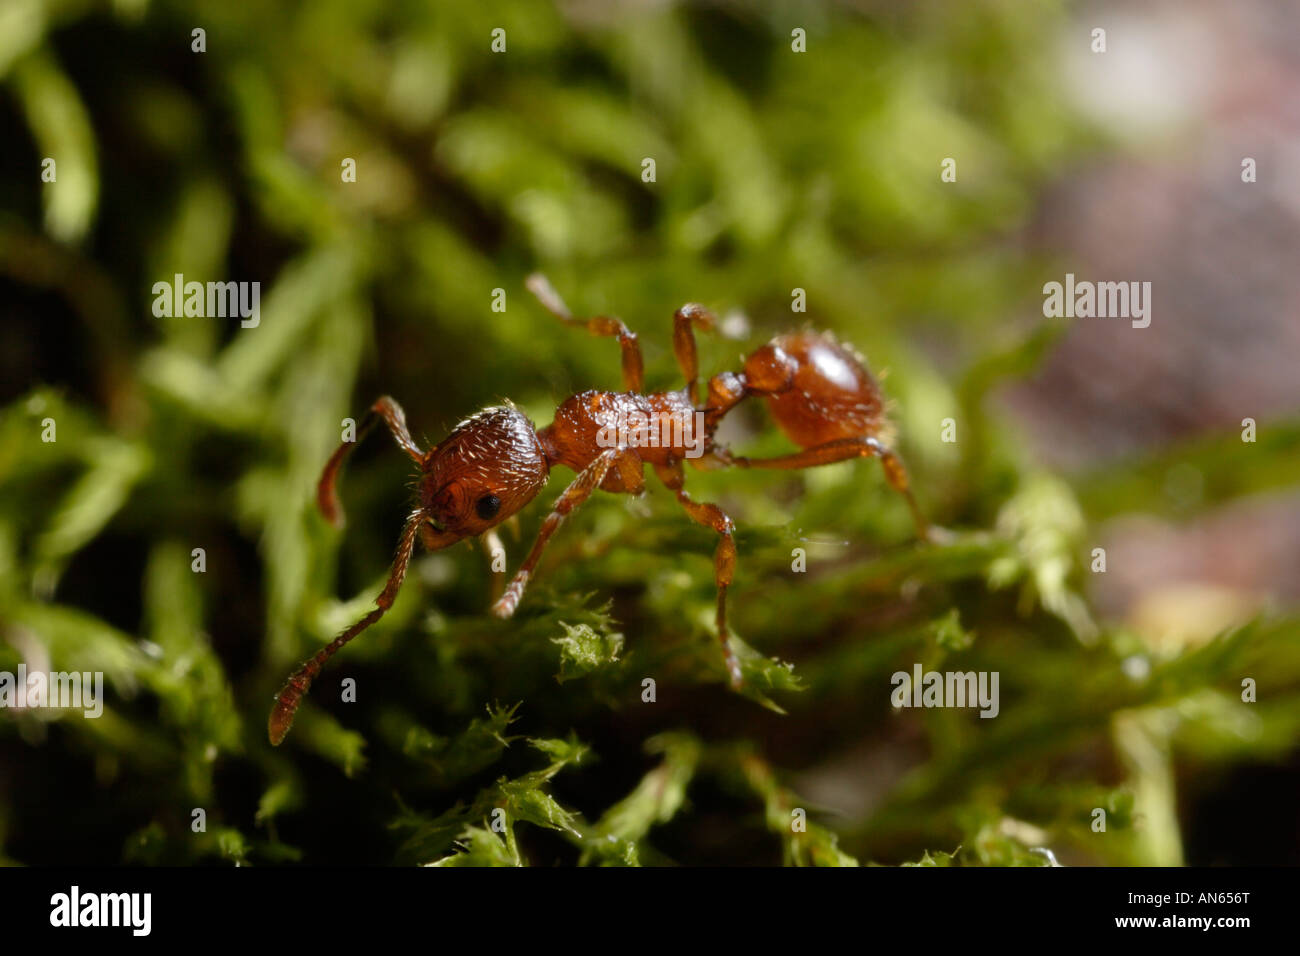 Ant del género Myrmica sobre un trozo de musgo. Son imposibles de identificar nuevas sin un microscopio, por desgracia. Foto de stock